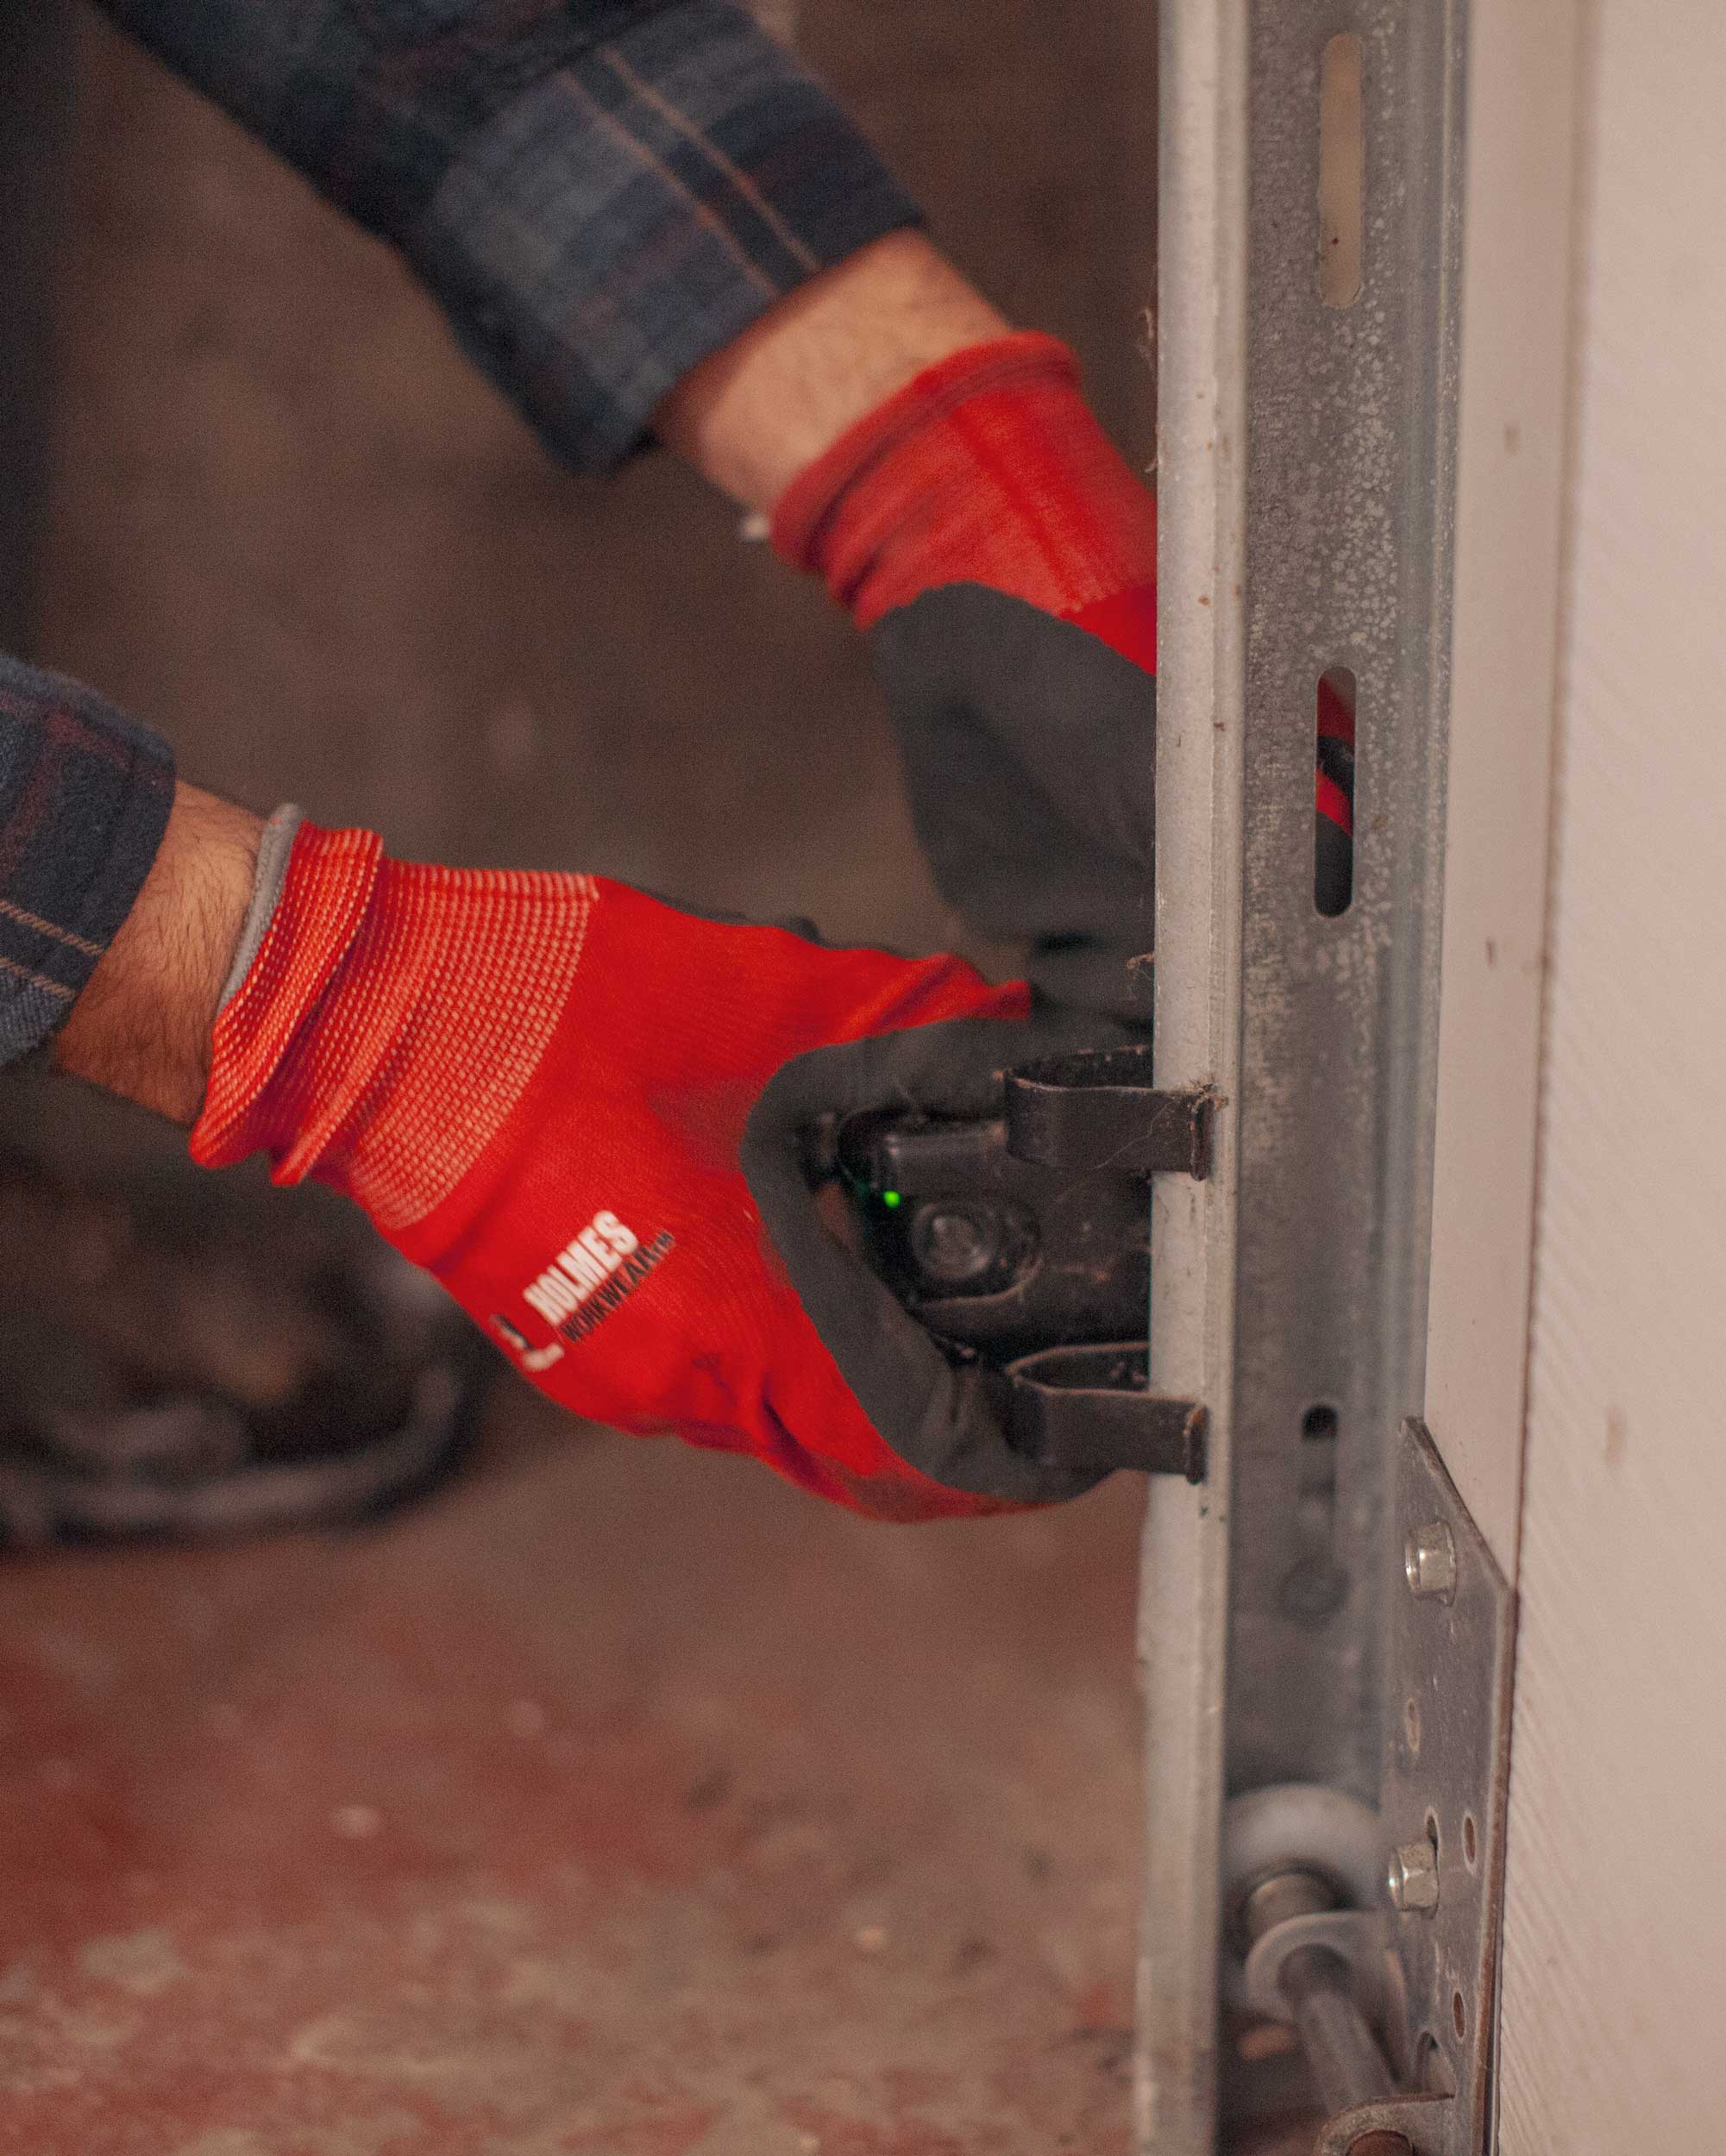 Reparing sensors of a garage door